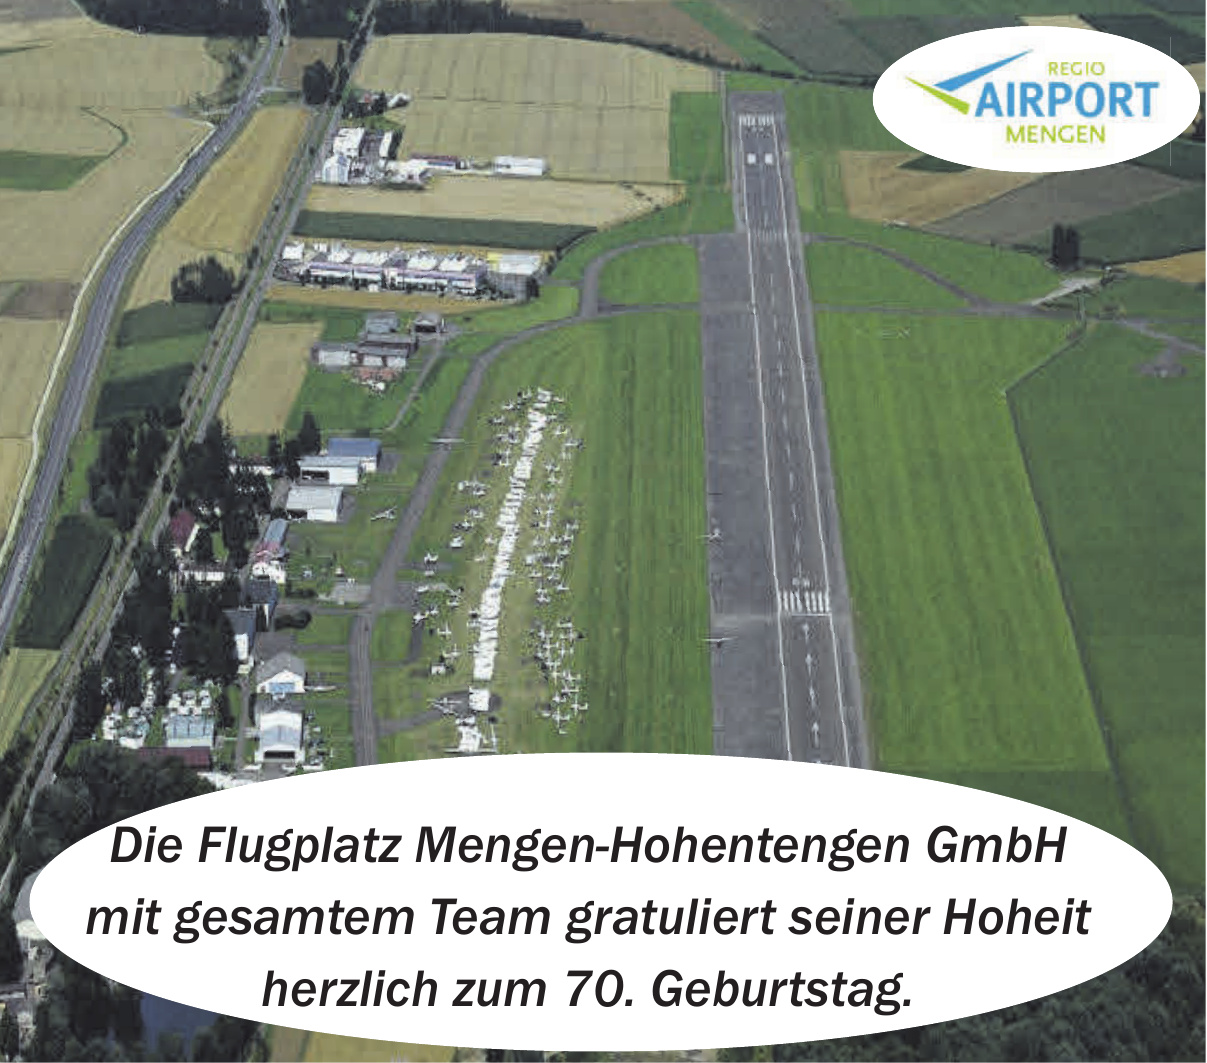 Flugplatz Mengen-Hohentengen GmbH